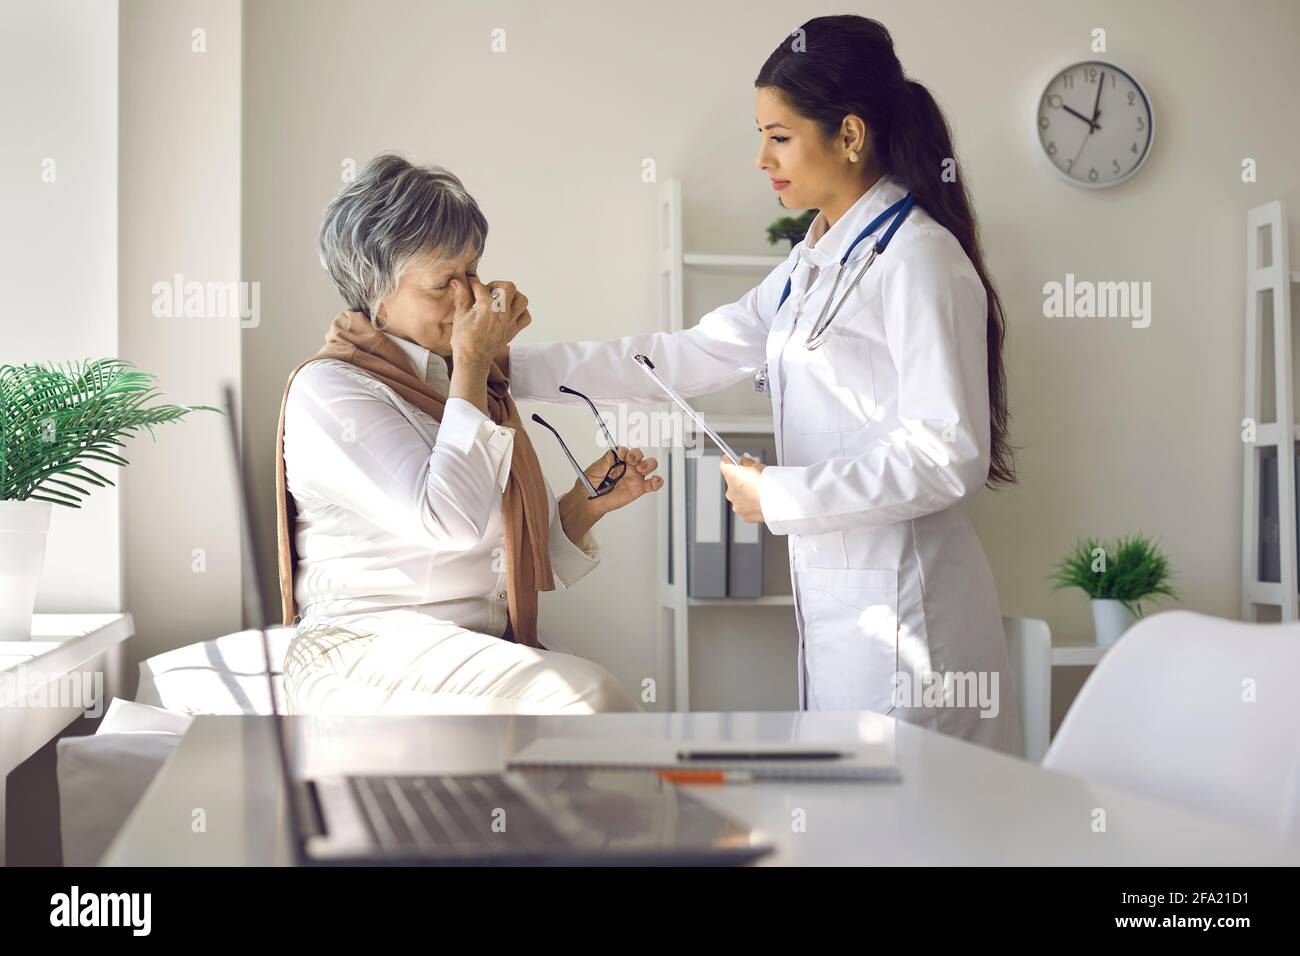 Femme âgée malheureuse avec des maux de tête ou des problèmes de vision à parler médecin à l'hôpital Banque D'Images